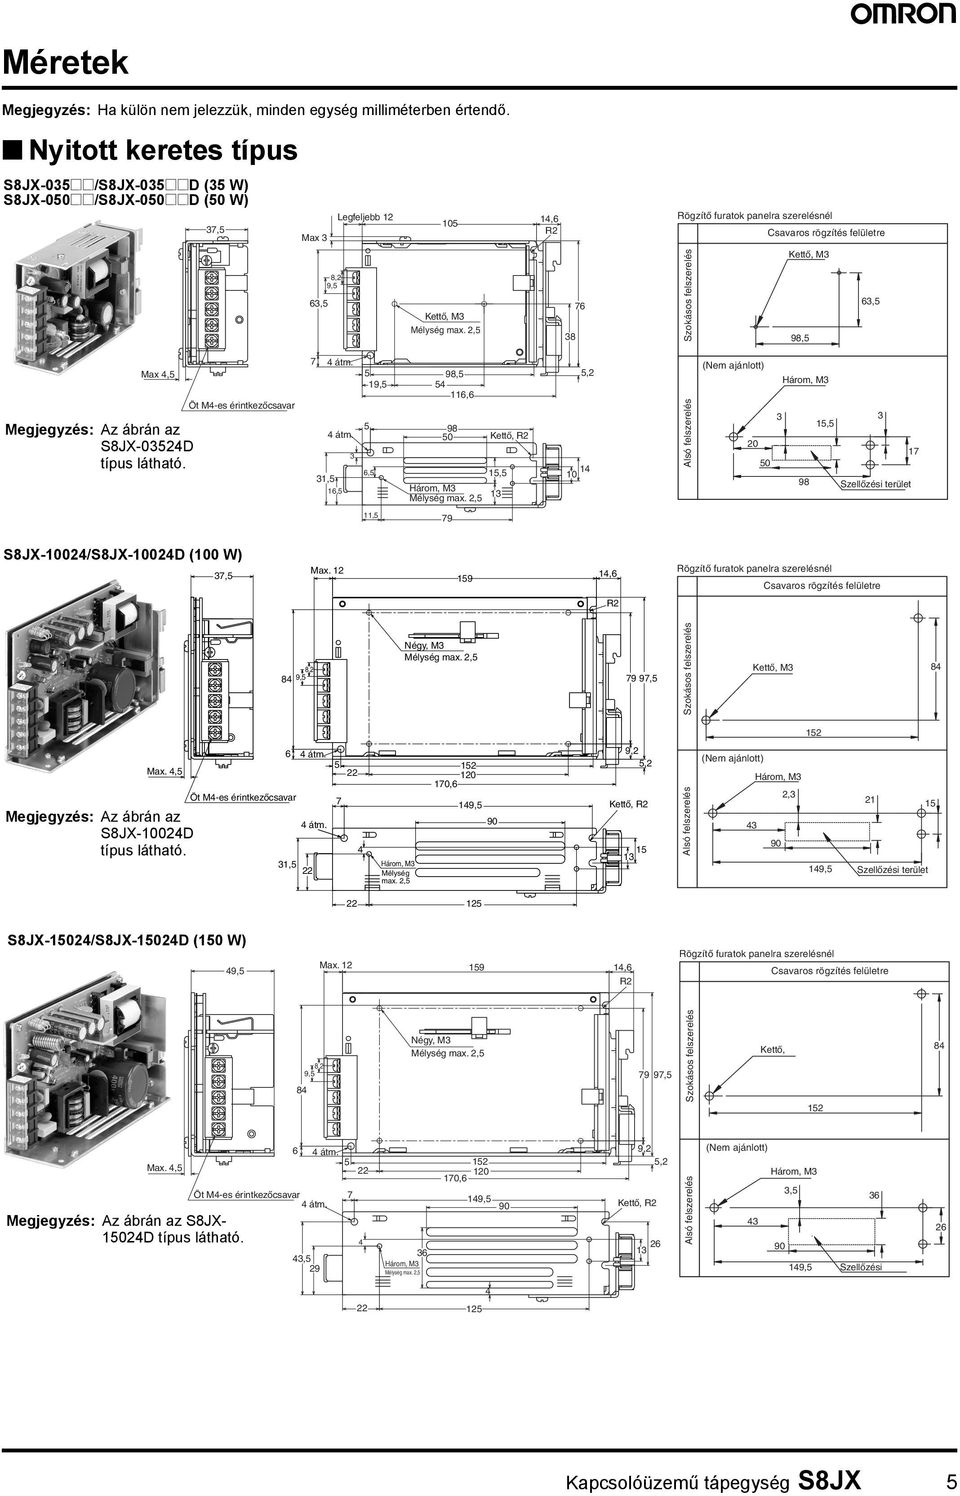 2, 1,6 R2 76 8 Rögzítő furatok panelra szerelésnél Szokásos felszerelés Csavaros rögzítés felületre Kettő, M 6, 98, Max, Megjegyzés: Az ábrán az S8JX-02D típus látható.